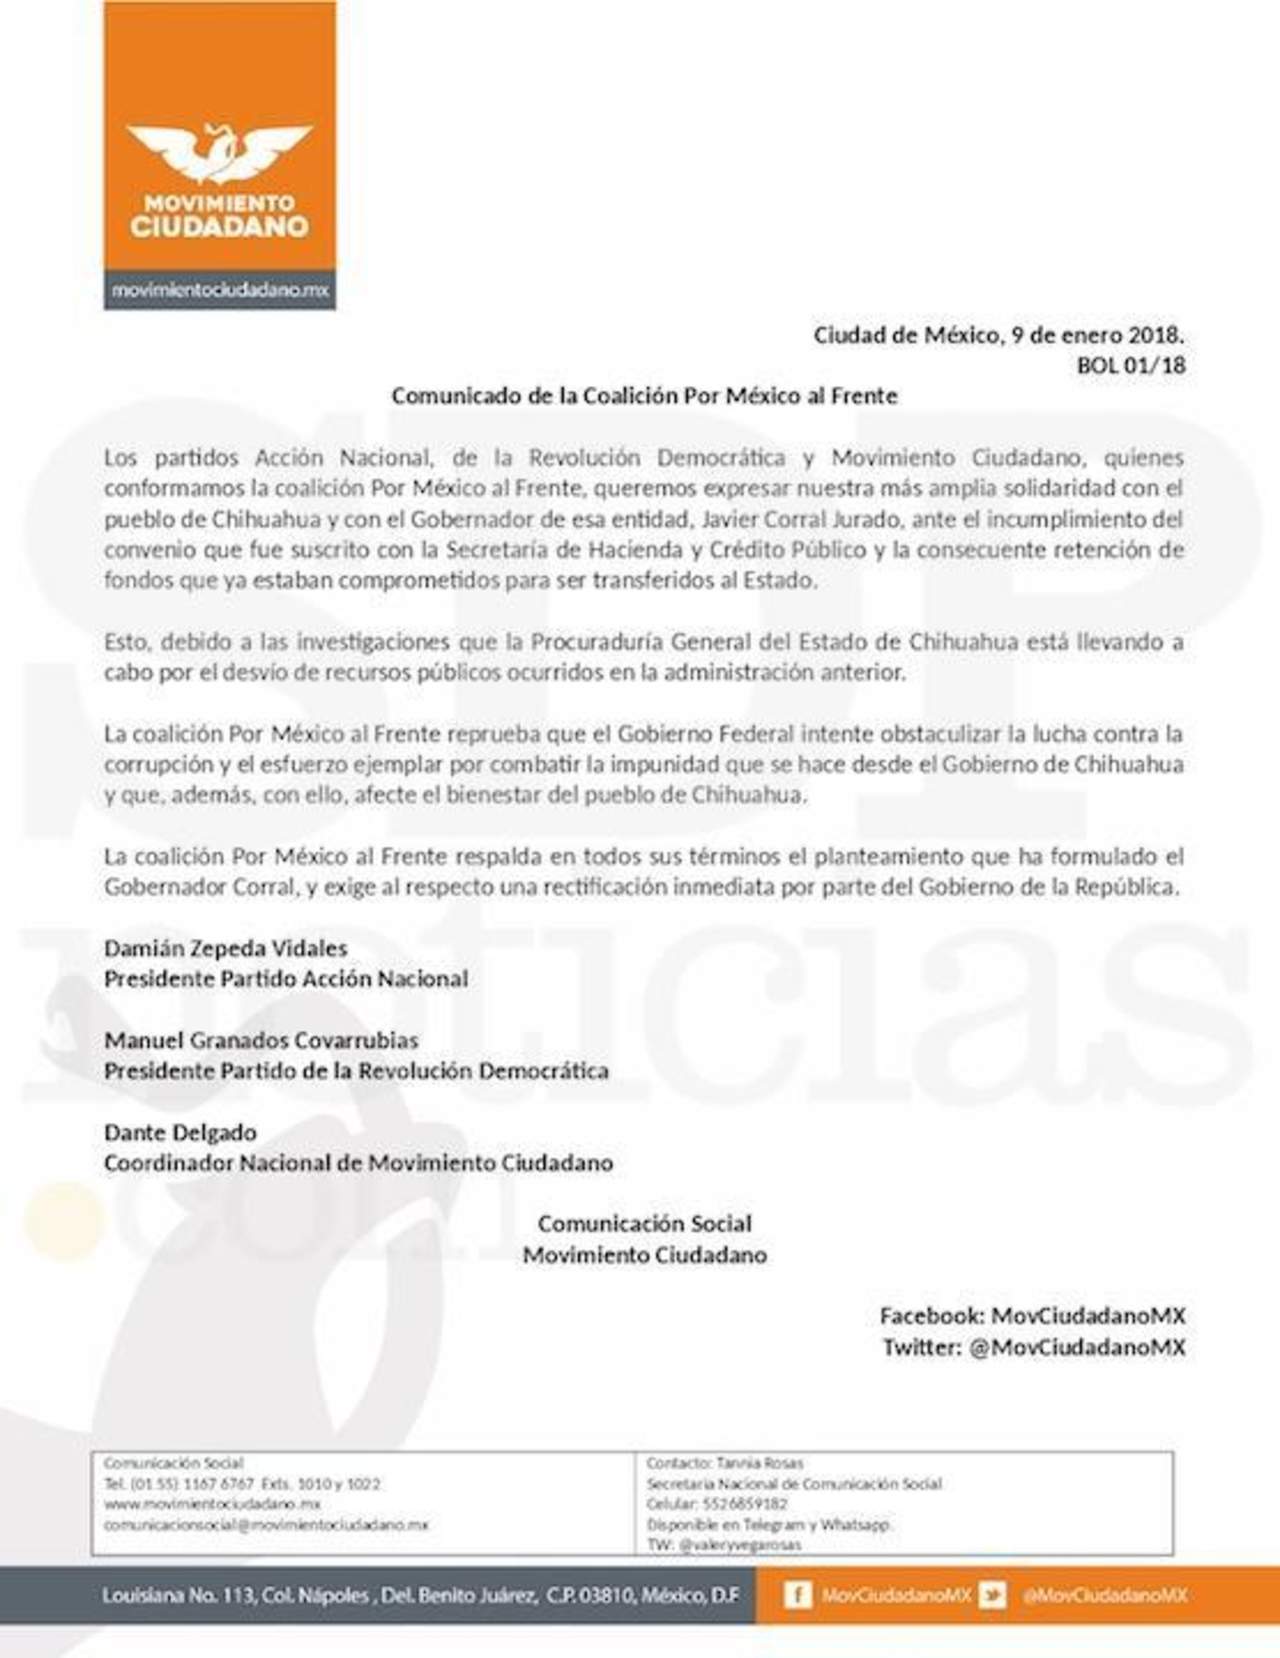 En un comunicado firmado por los líderes del PAN, Damián Zepeda; PRD, Manuel Granados y MC, Dante Delgado, se solidarizaron con el pueblo de Chihuahua y con el gobernador. (ESPECIAL)